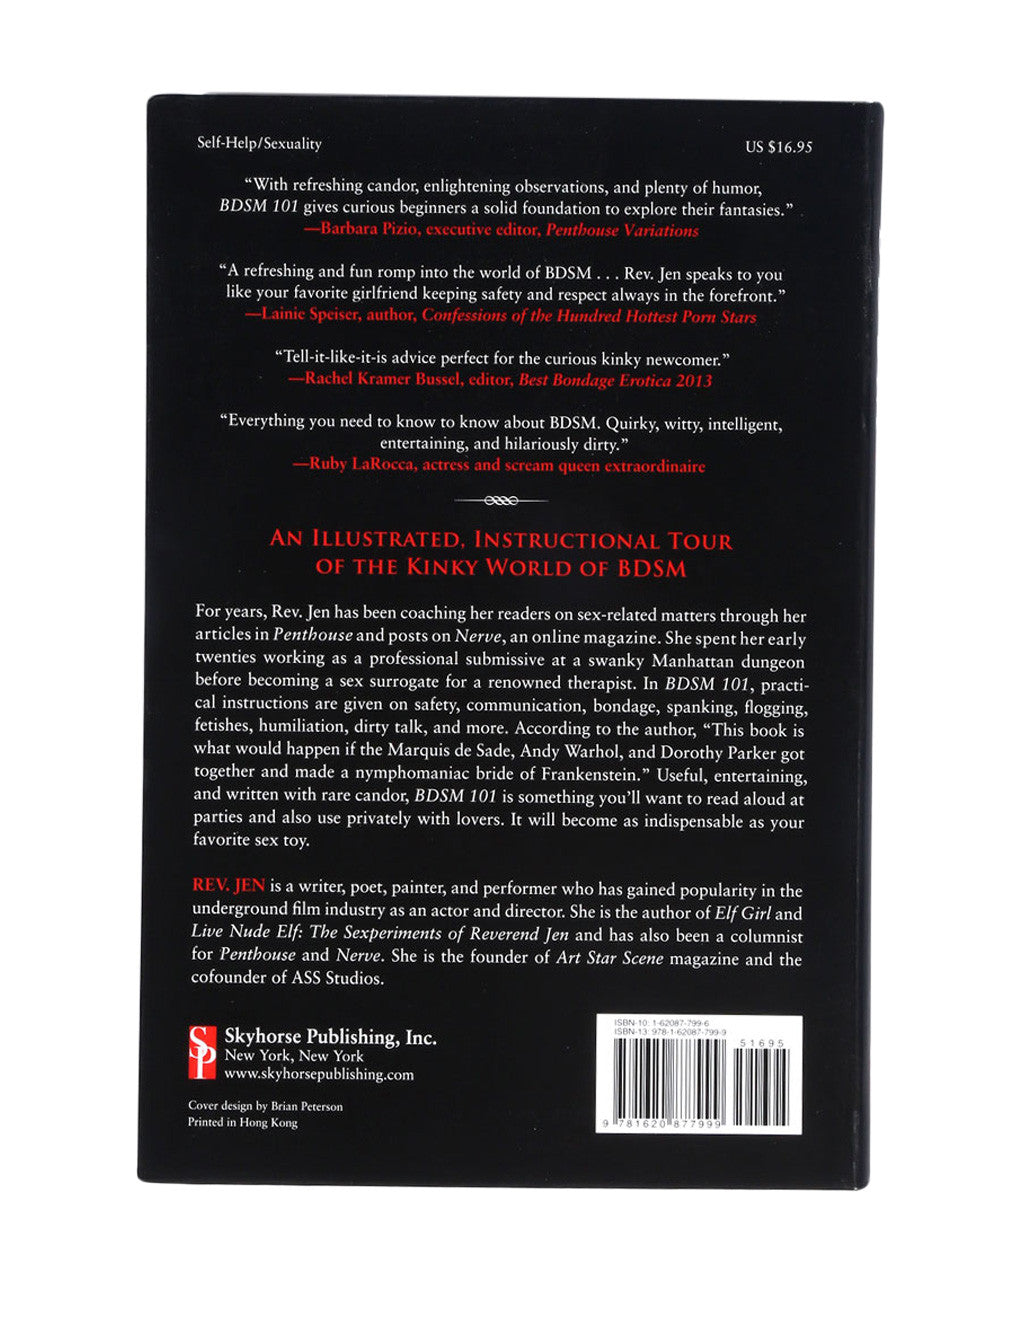 BDSM 101 Instructional Book by Rev. Jen back cover